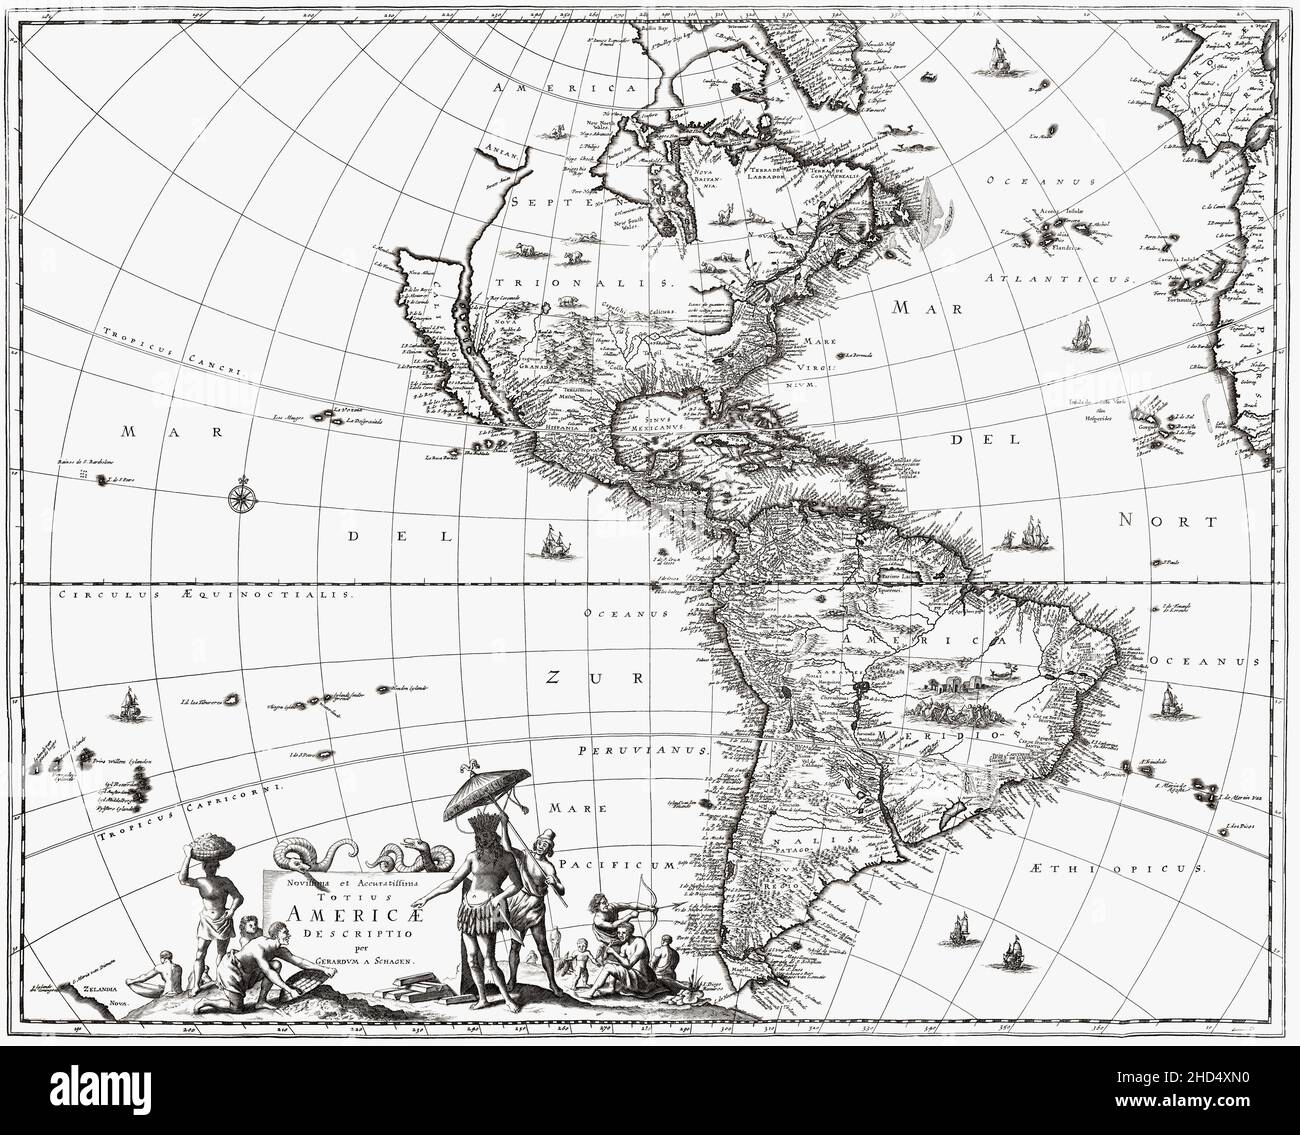 Dopo una mappa del 1671 delle Americhe di Gerard van Schagen, cartografo olandese. Mostra la California come un'isola. Il suo nome completo è Novissima et Accuratissima Totius Americae Descripio. Foto Stock